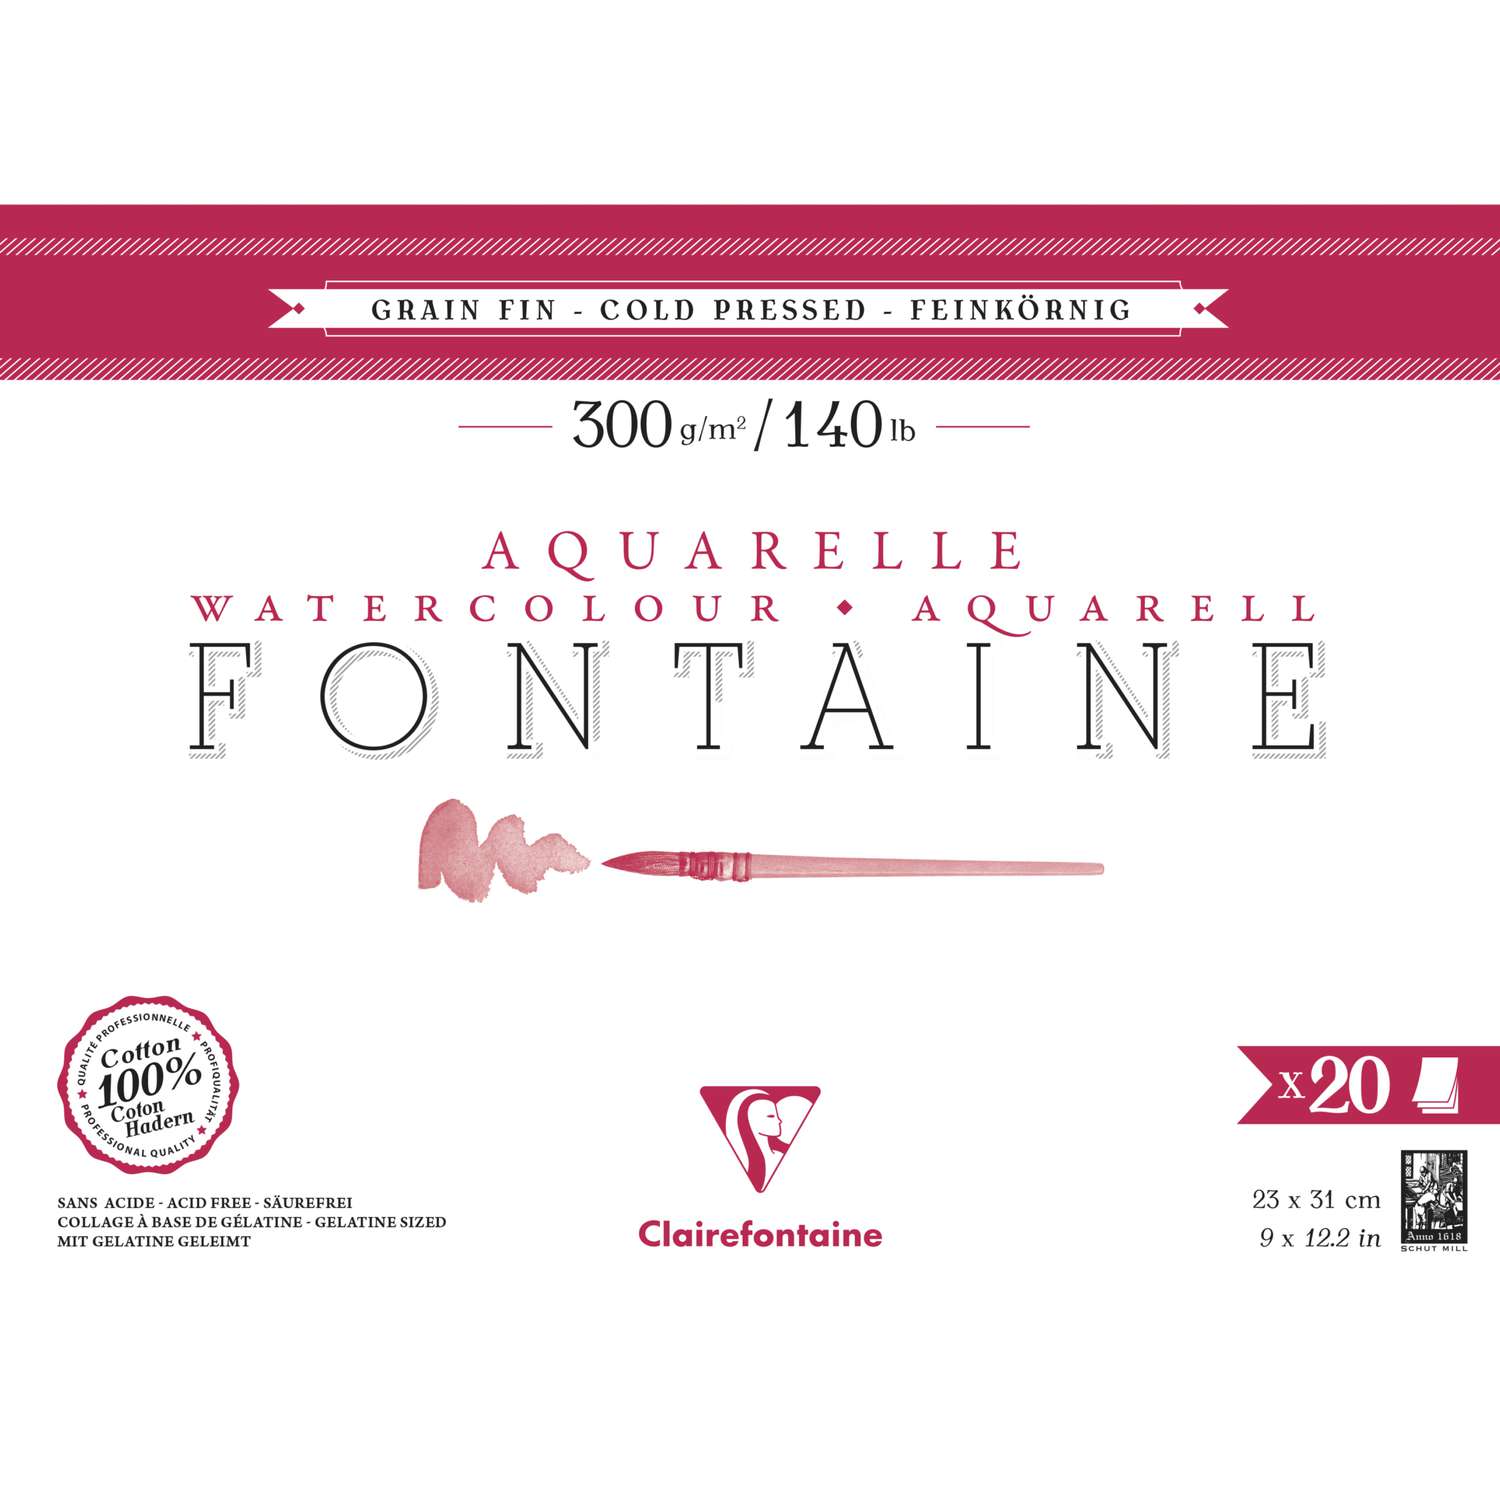 Clairefontaine 96372C Fontaine Aquarelle paquet bords frangés 5F 75x105cm 640g grain fin Blanc 